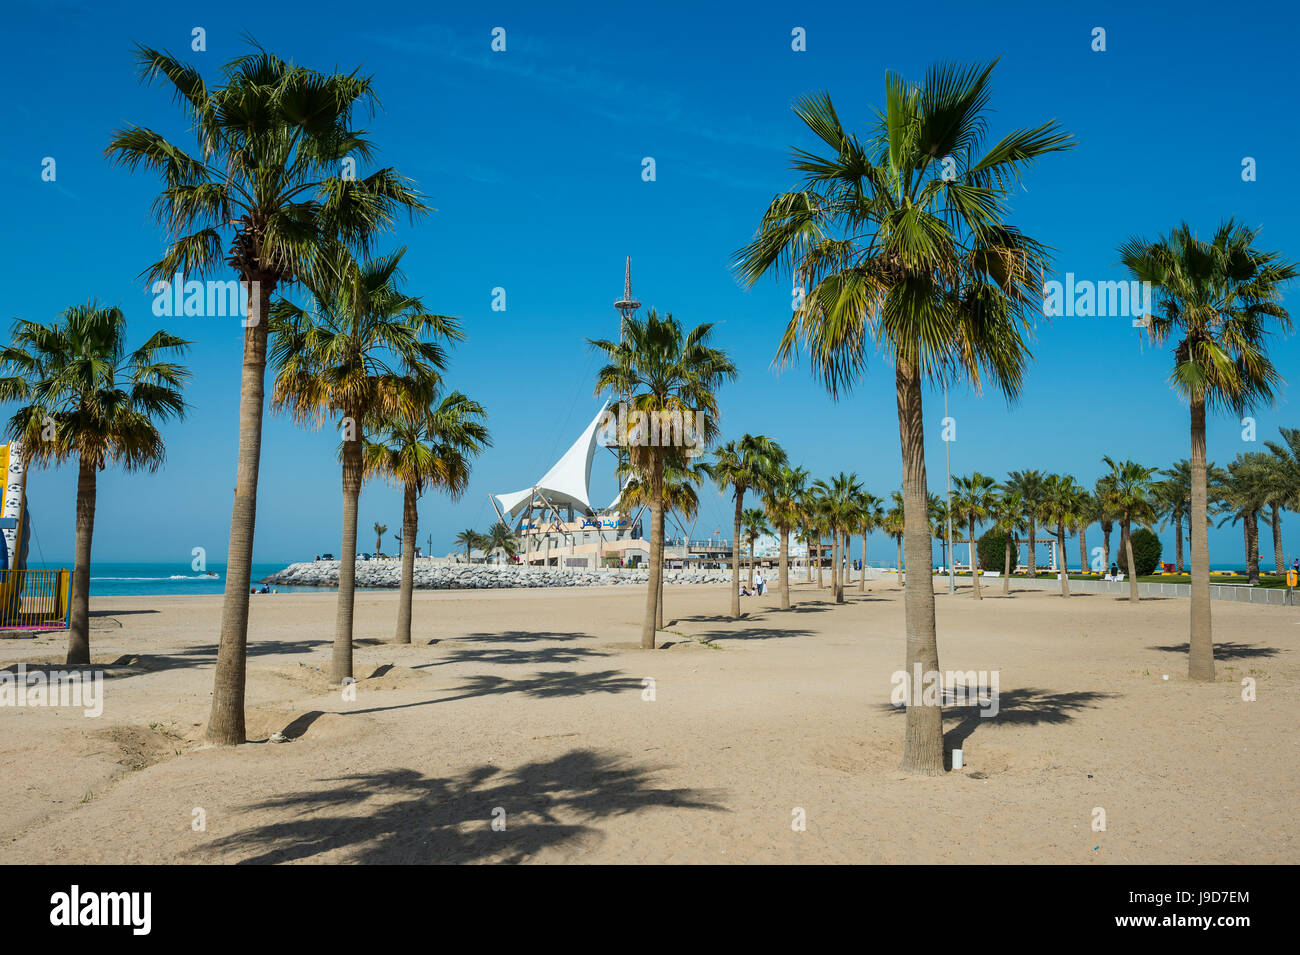 Palm fringed Marina beach, Kuwait City, Kuwait, Middle East Stock Photo